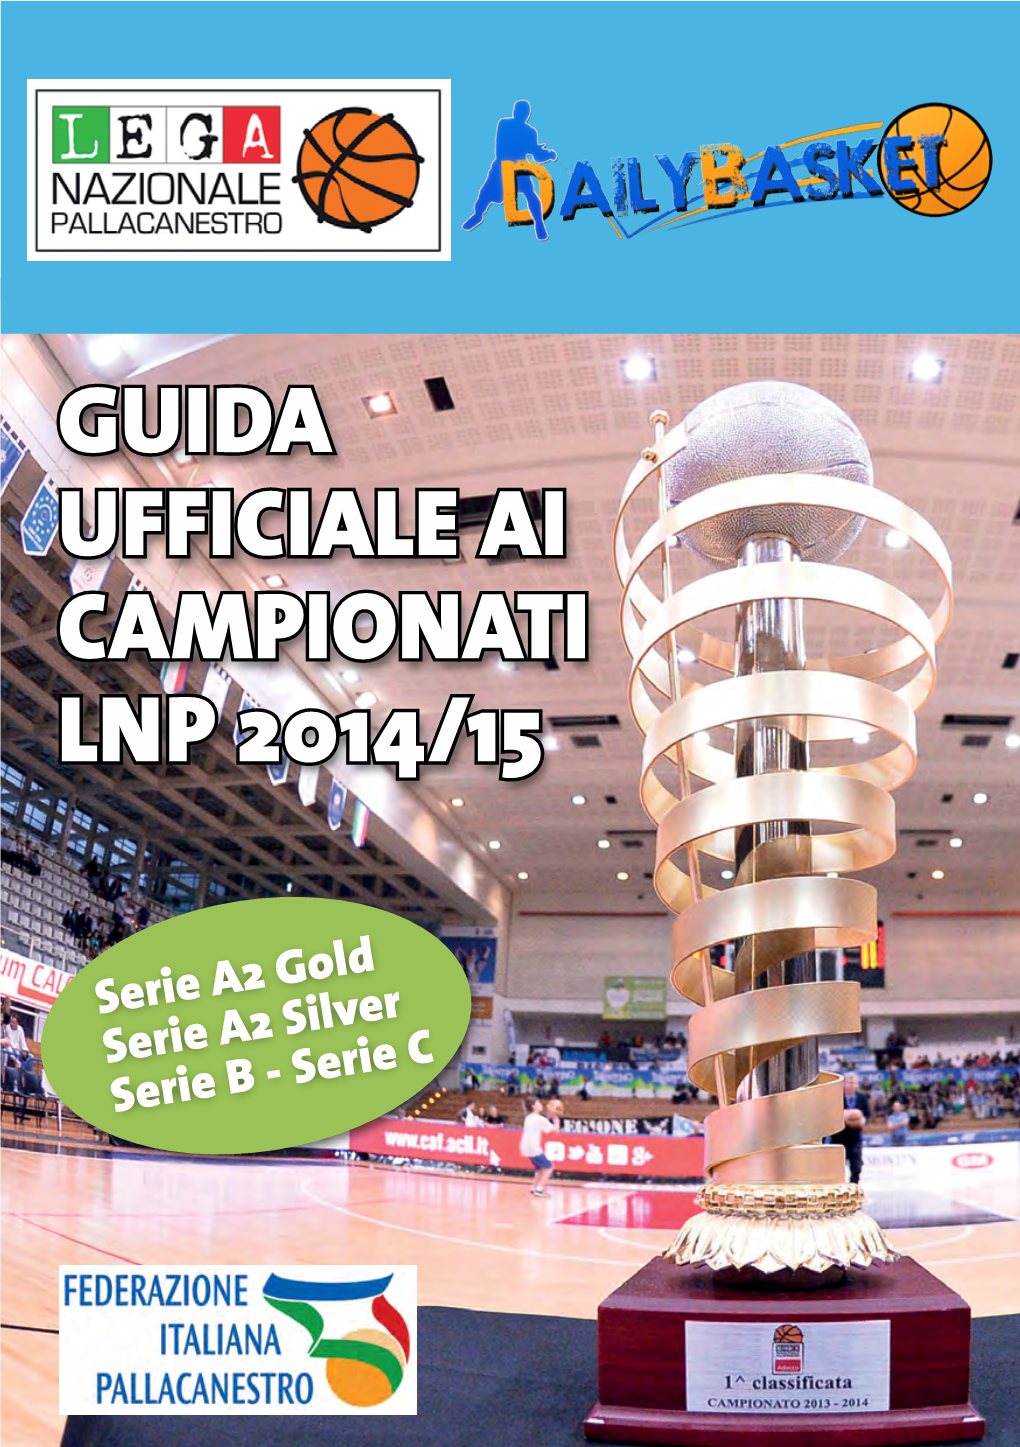 Guida Ufficiale Ai Campionati Lnp 2014/15